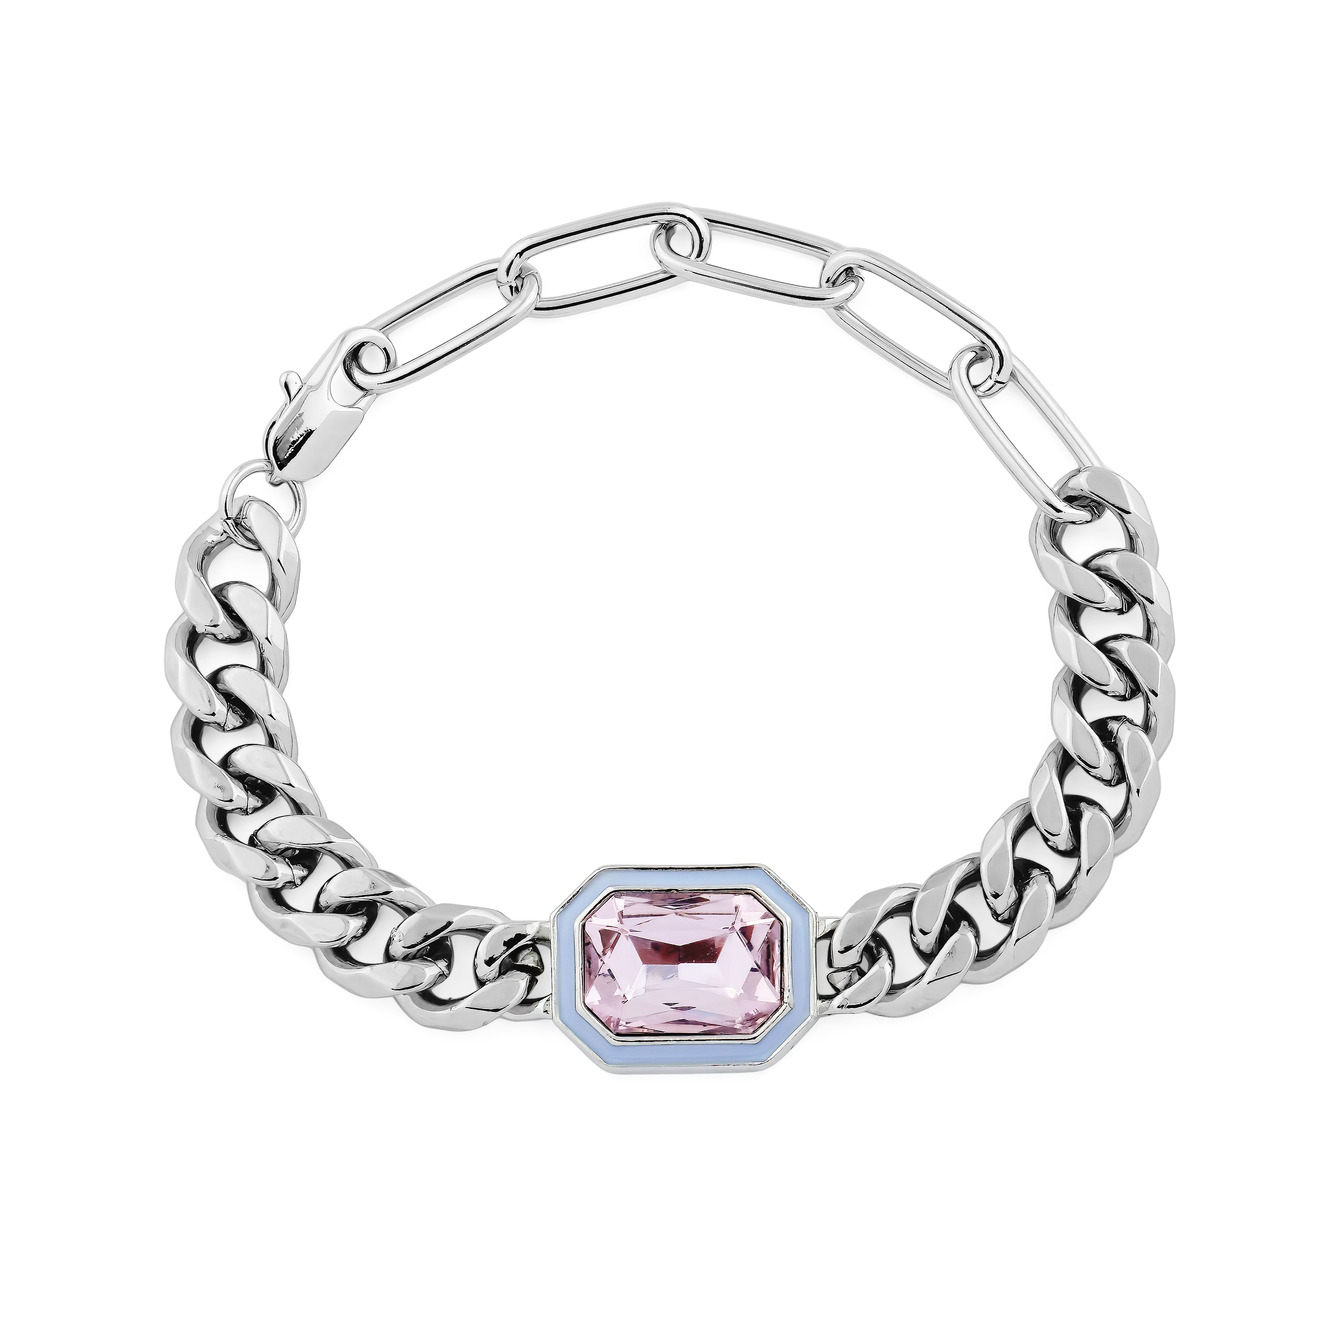 herald percy серебристая цепочка с розовым кристаллом Herald Percy Серебристый браслет из цепи крупного плетения с розовым кристаллом